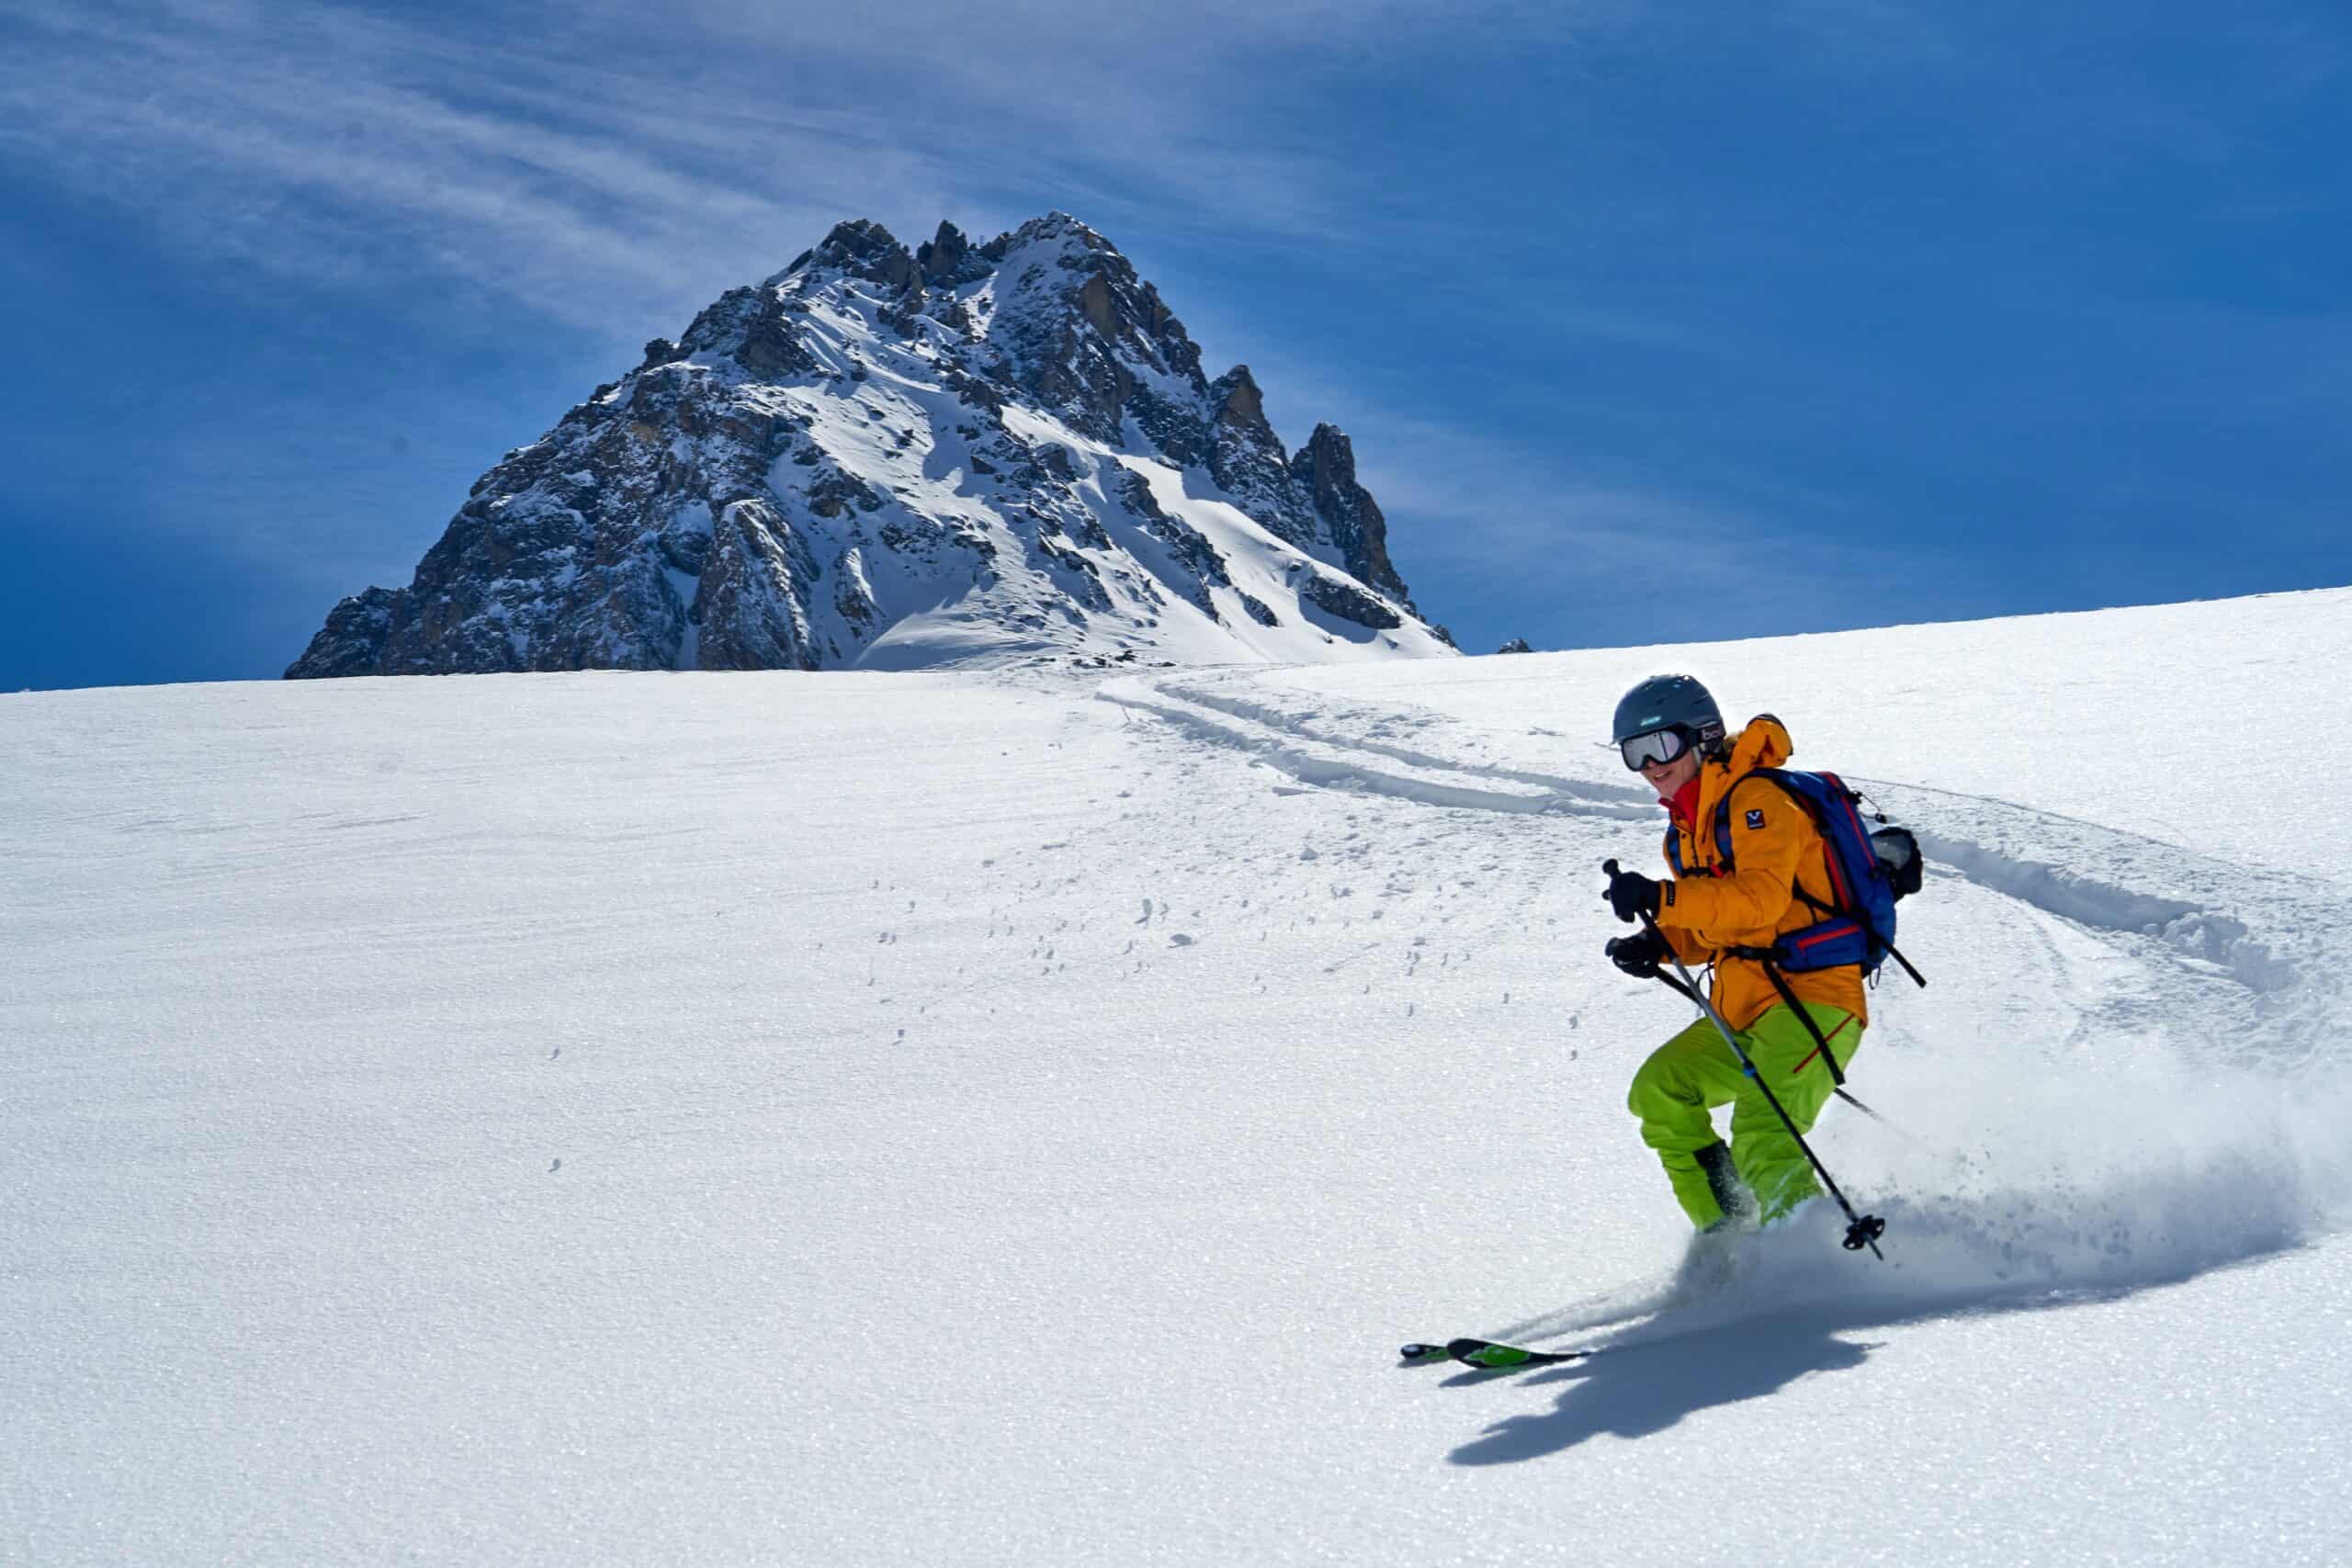 Liste des choses à emporter pour un voyage de ski : tous les